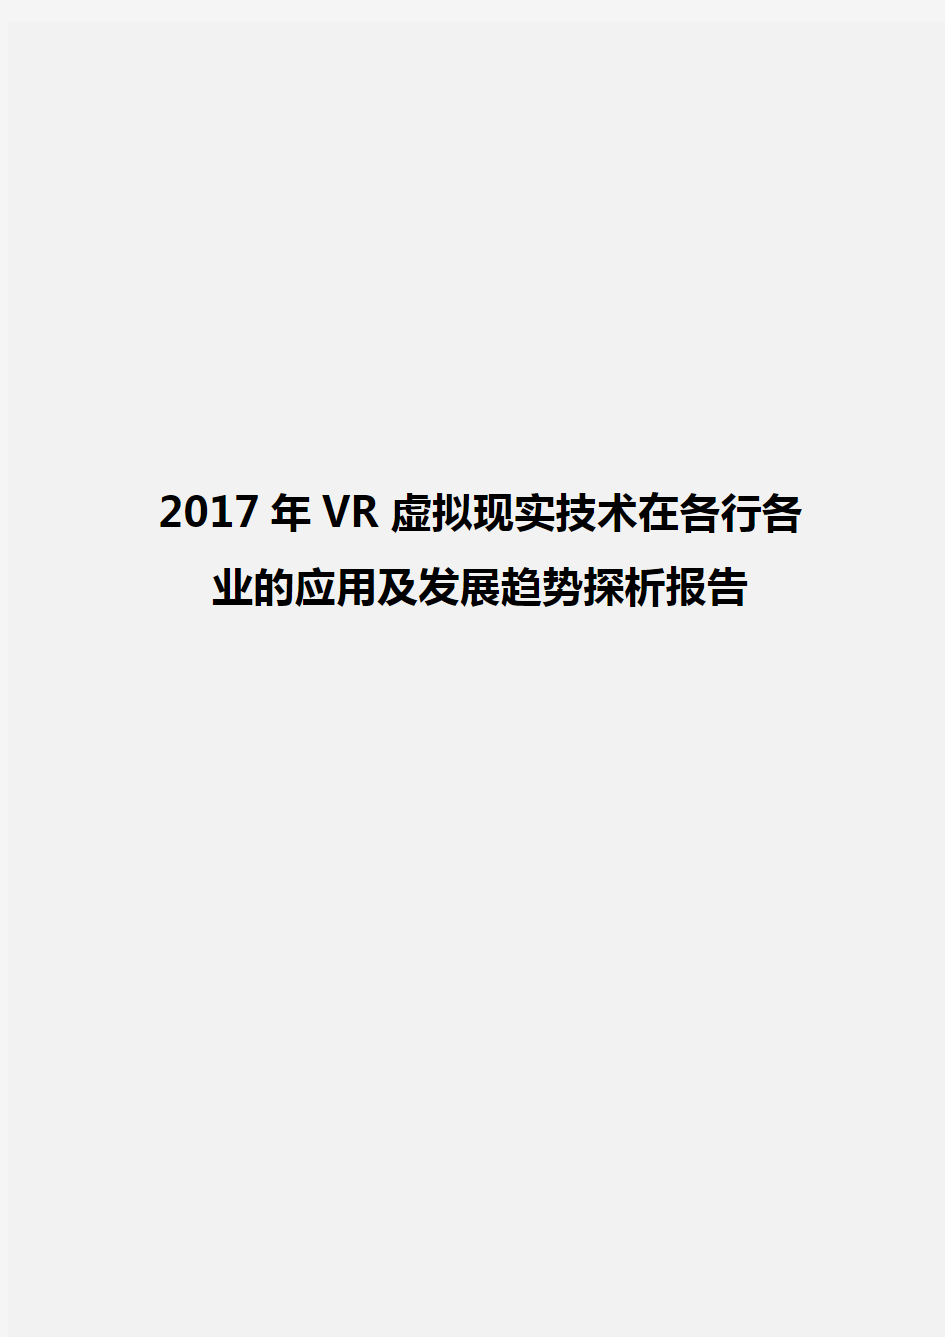 2017年VR虚拟现实技术在各行各业的应用及发展趋势探析报告